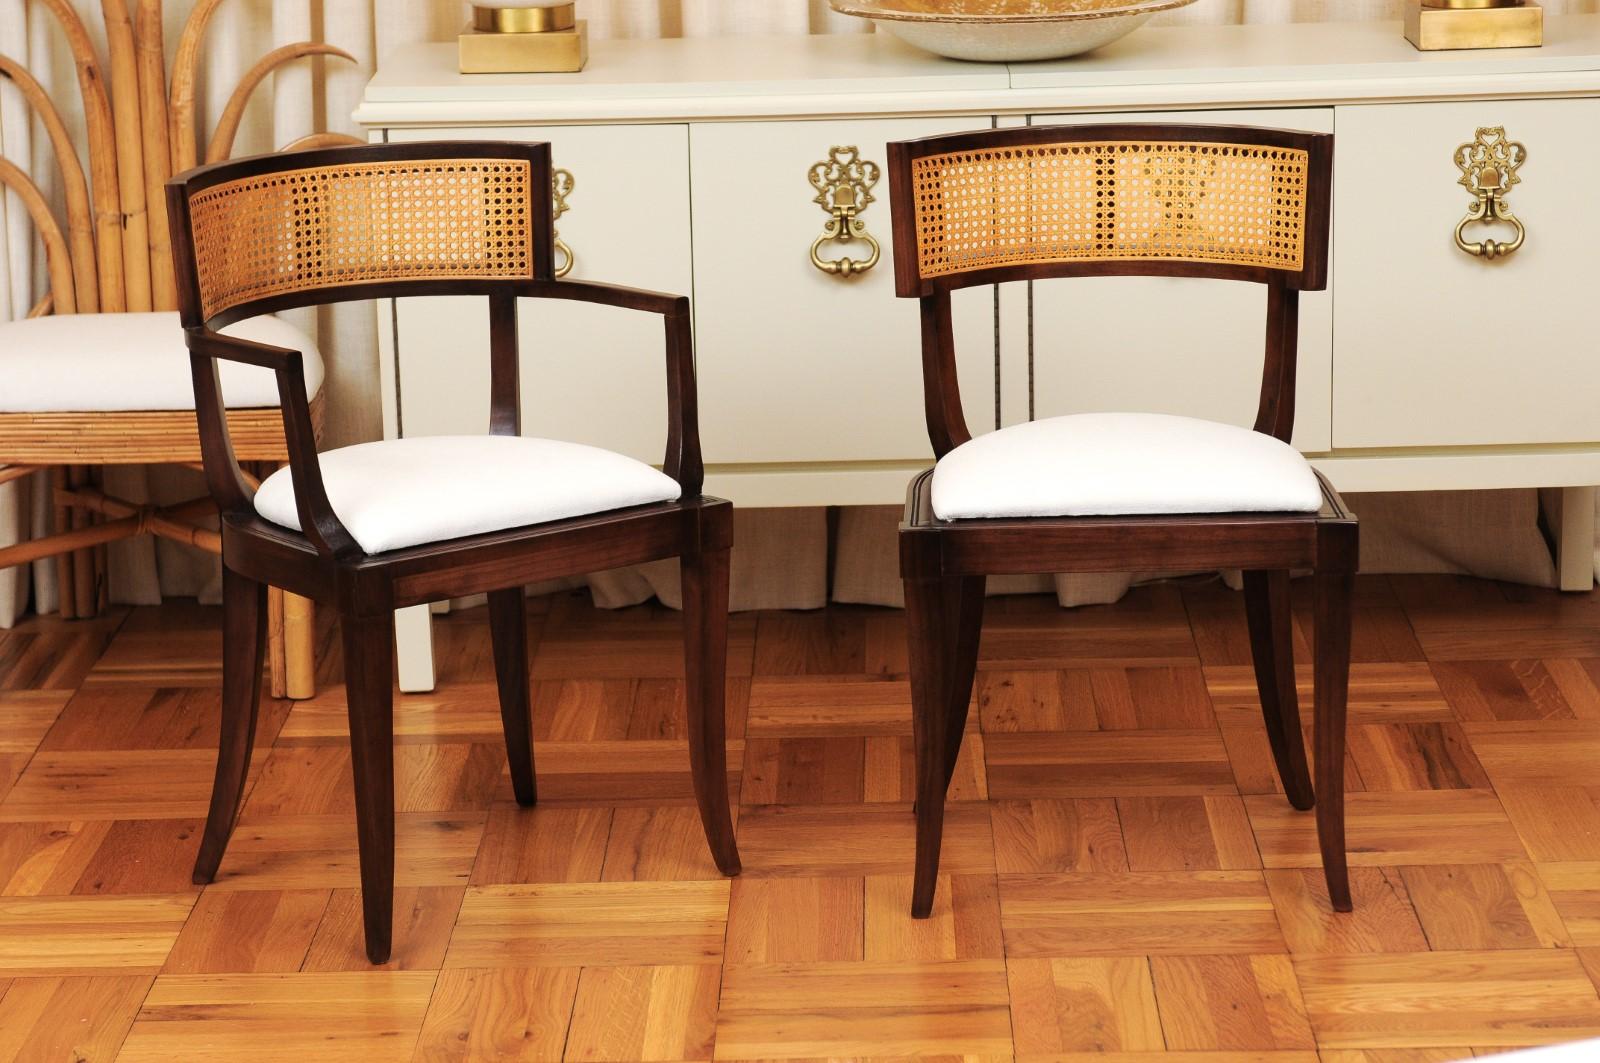 Le plus rare des rares : un ensemble exceptionnel, méticuleusement restauré, de dix (10) chaises de salle à manger Klismos à dossier en canne par Baker Furniture, vers 1958. Un ensemble de cette ampleur est l'équivalent pour le collectionneur de la